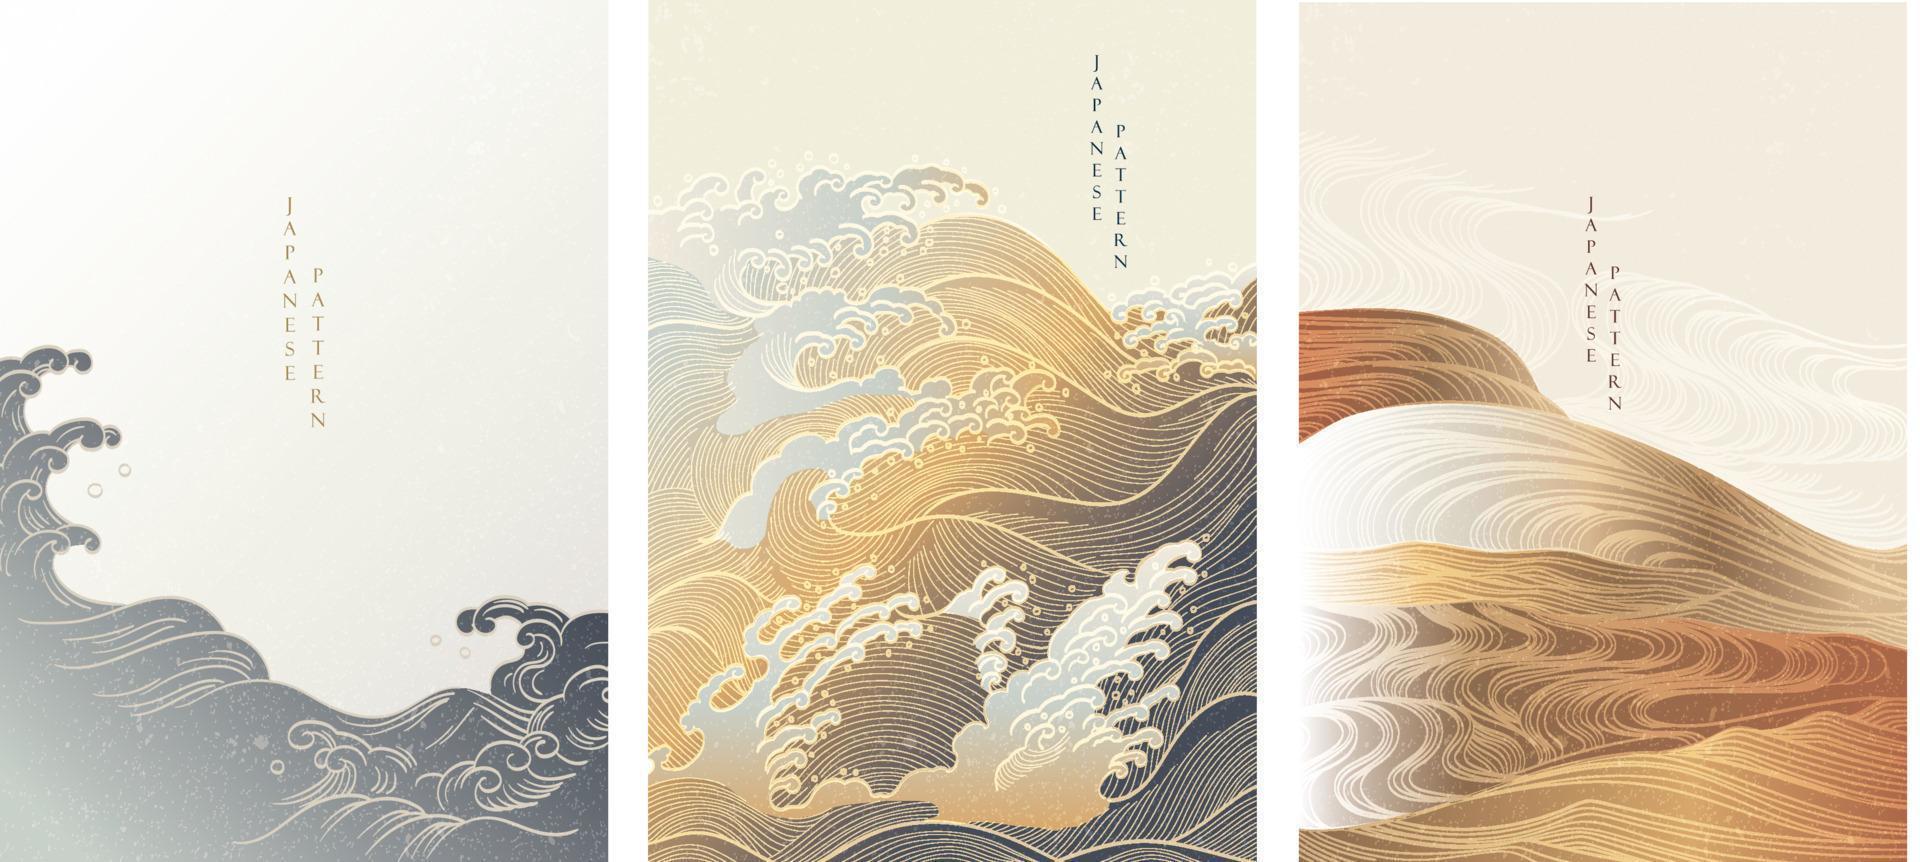 japanischer hintergrund mit handgezeichneter welle im vintage-stil. Banner-Design für Kunstlandschaften. vektor